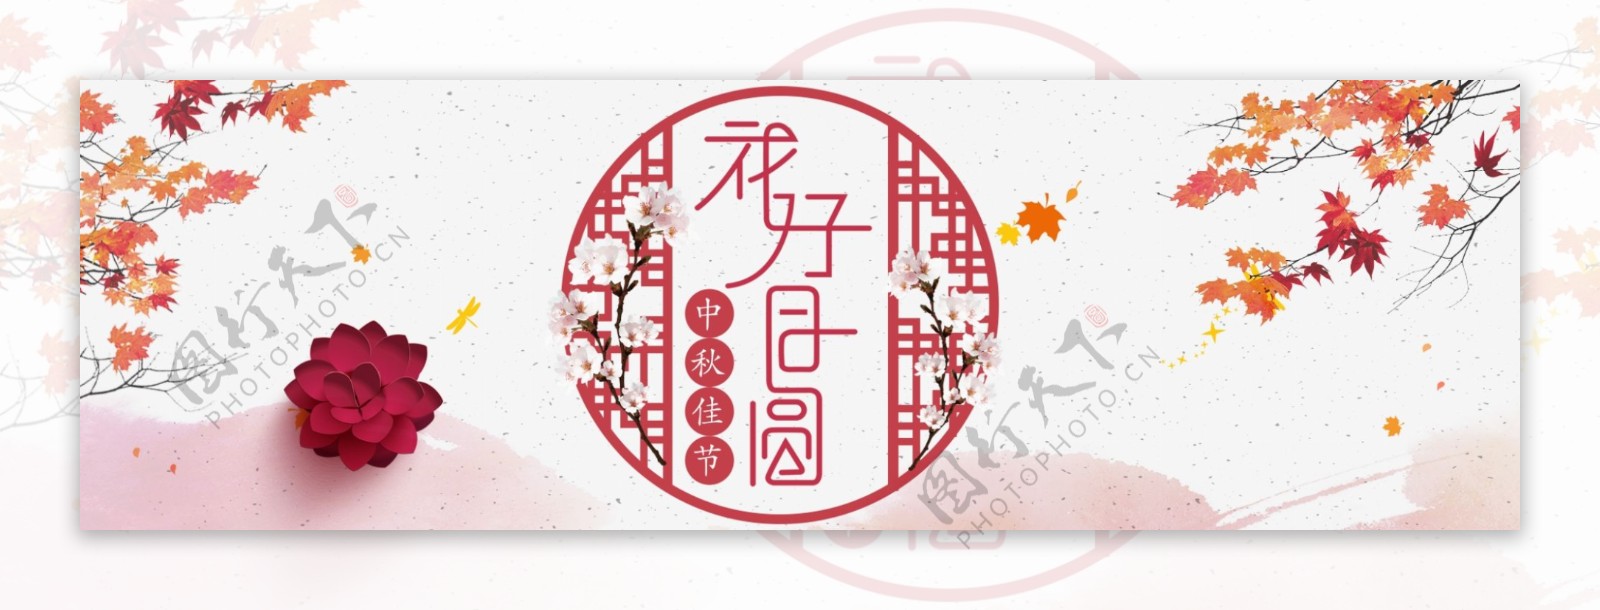 红色古典中国风灯笼梅花中秋节淘宝电商banner